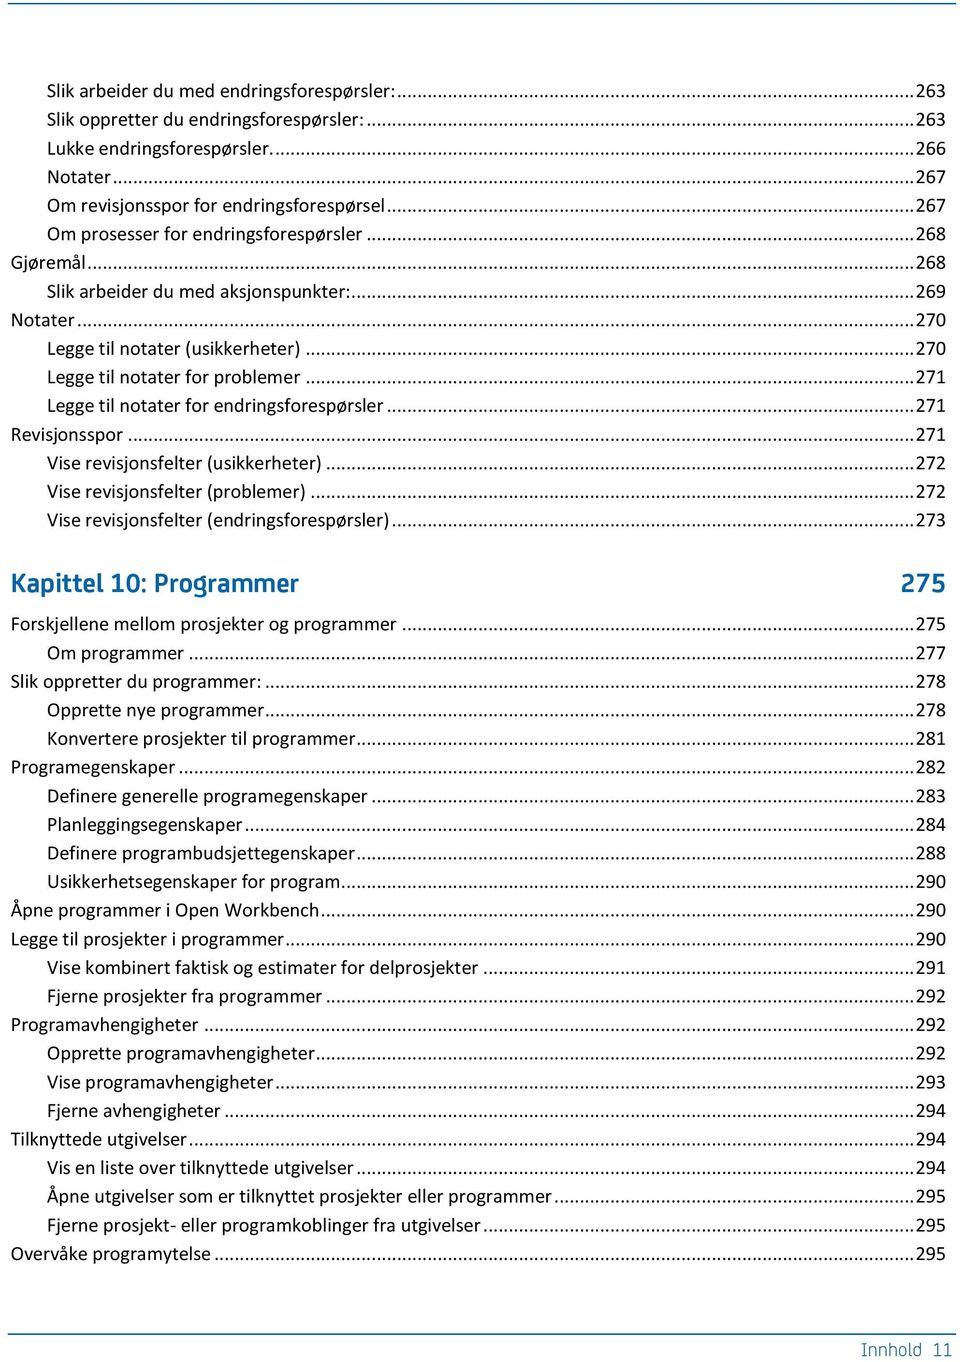 .. 271 Legge til notater for endringsforespørsler... 271 Revisjonsspor... 271 Vise revisjonsfelter (usikkerheter)... 272 Vise revisjonsfelter (problemer).